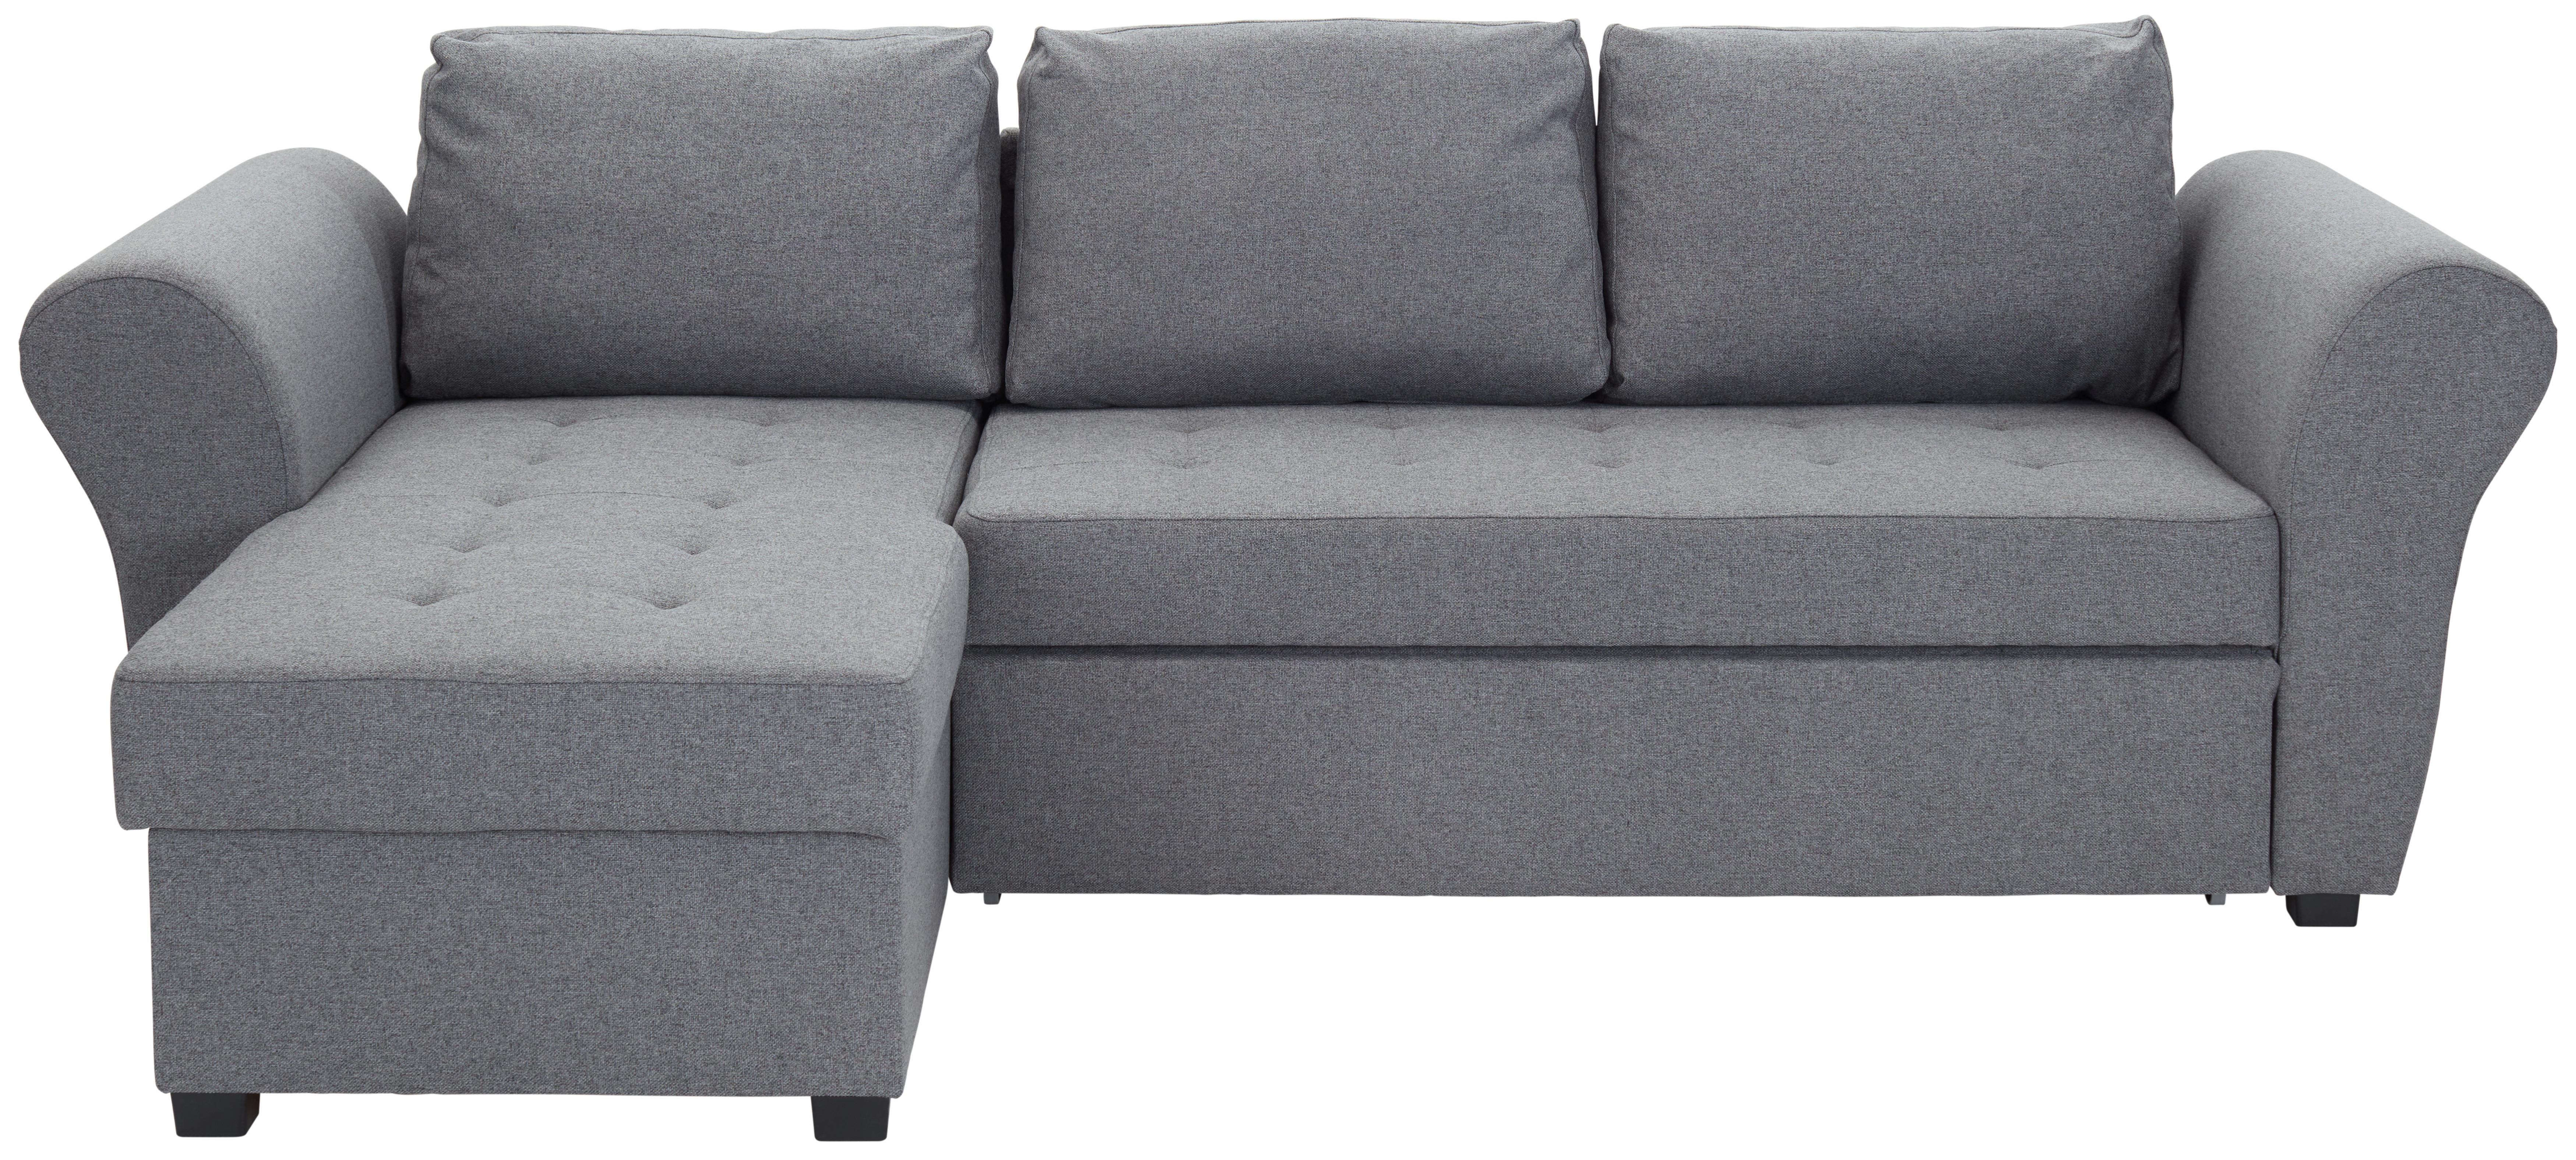 Sedežna Garnitura Lasse, Z Ležiščem - antracit, Moderno, tekstil (260/155cm) - Modern Living